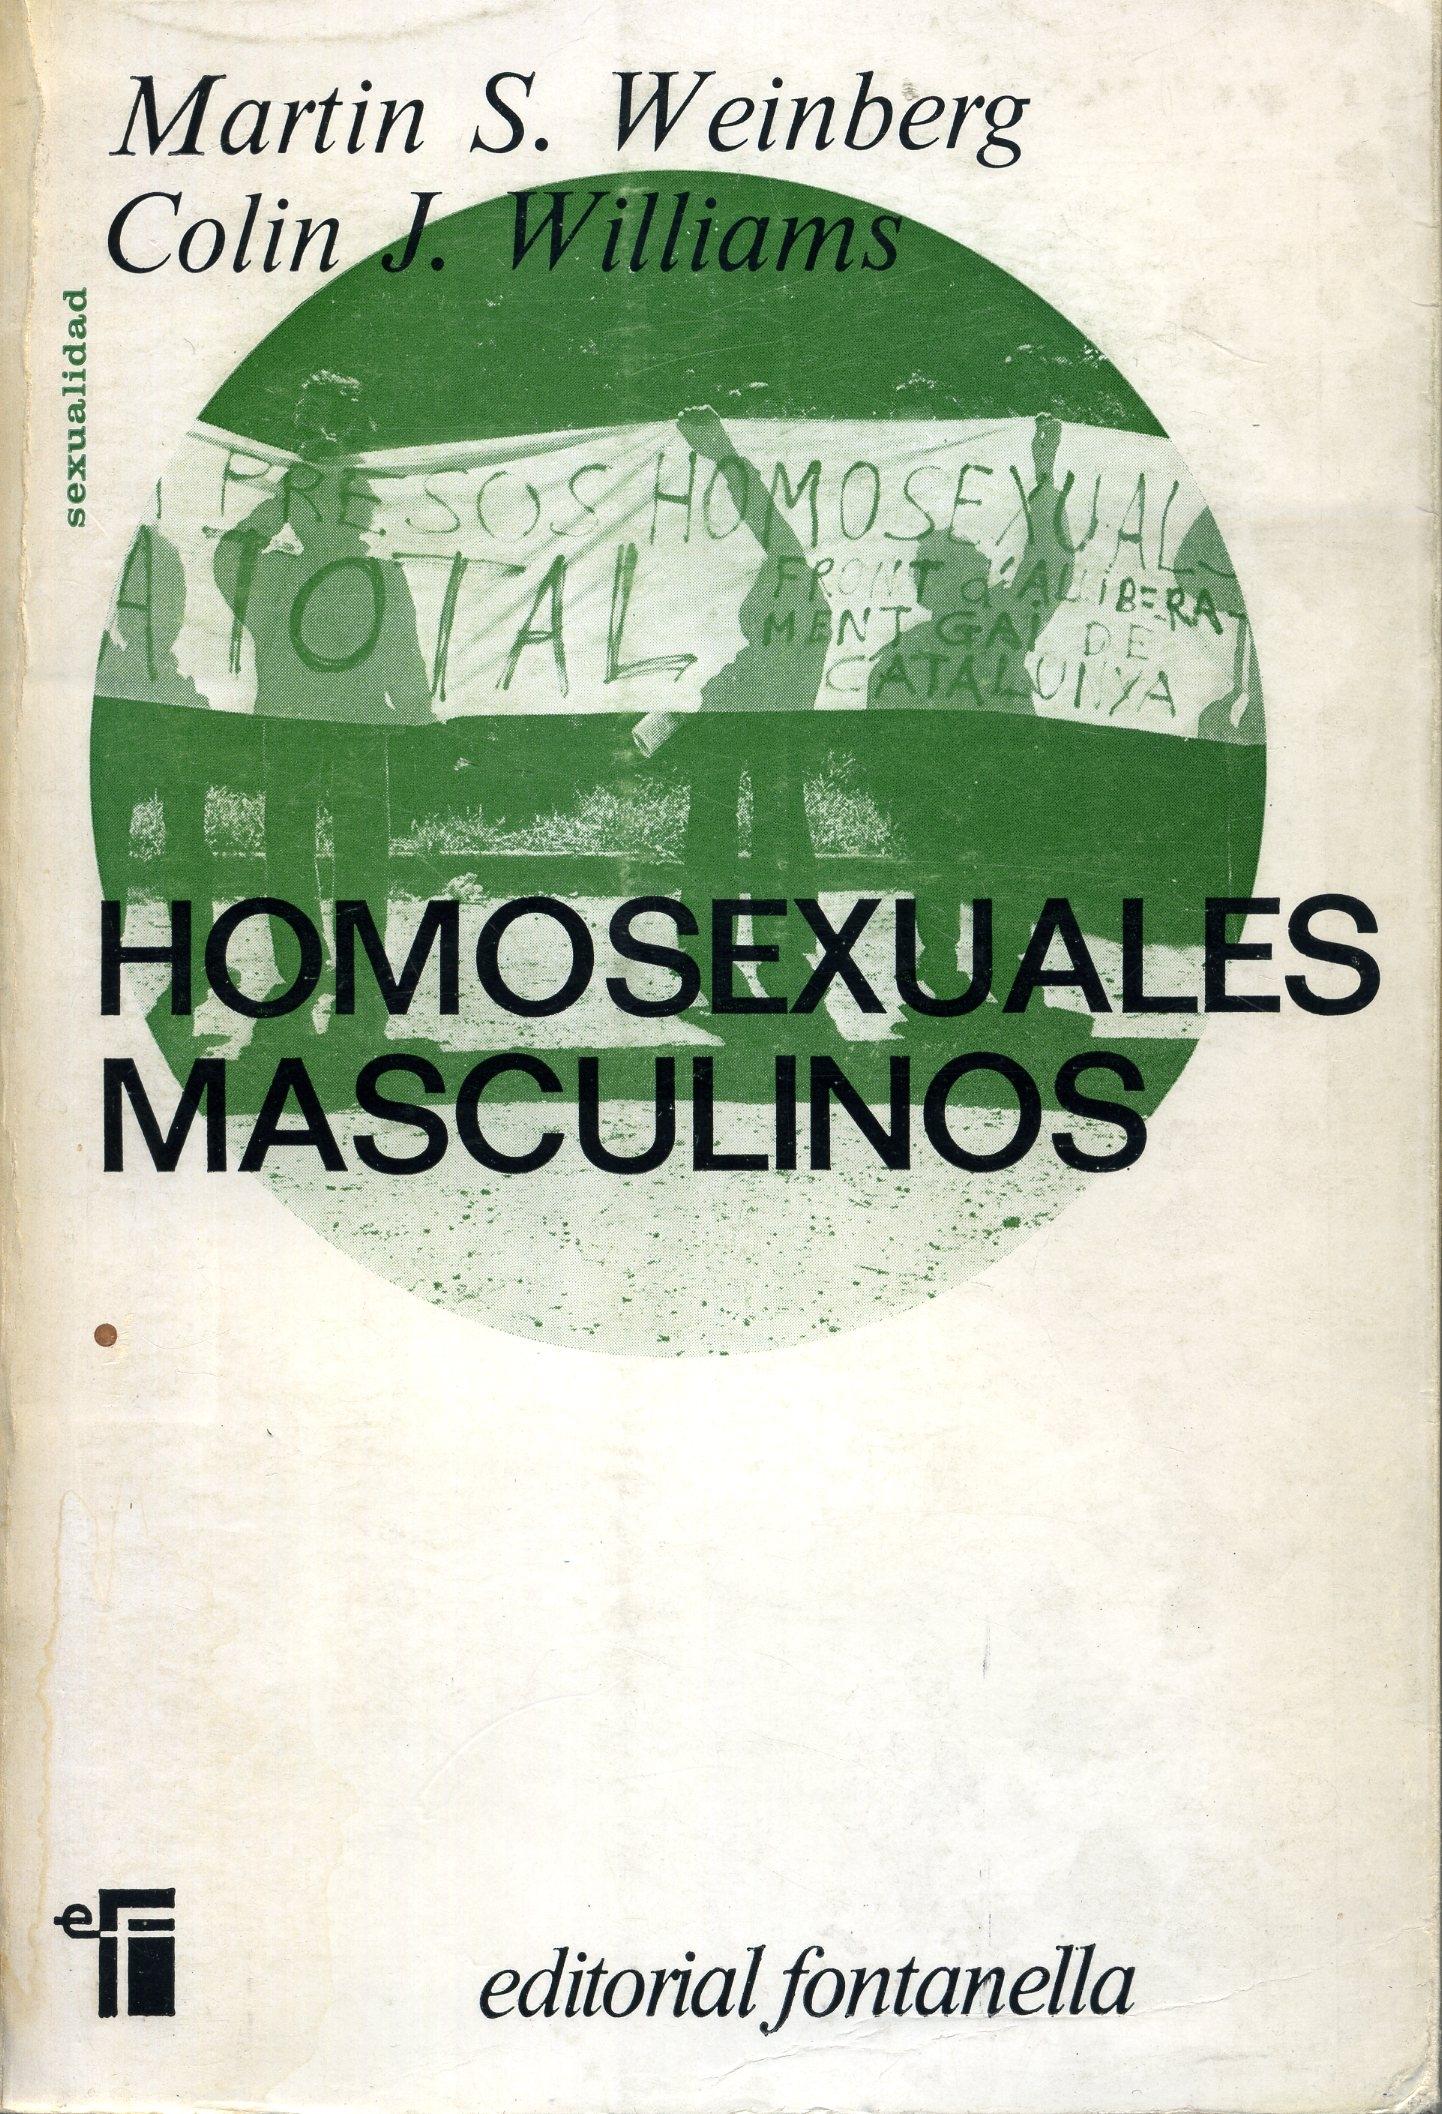 Homosexuales masculinos "Sus problemas y adaptación"